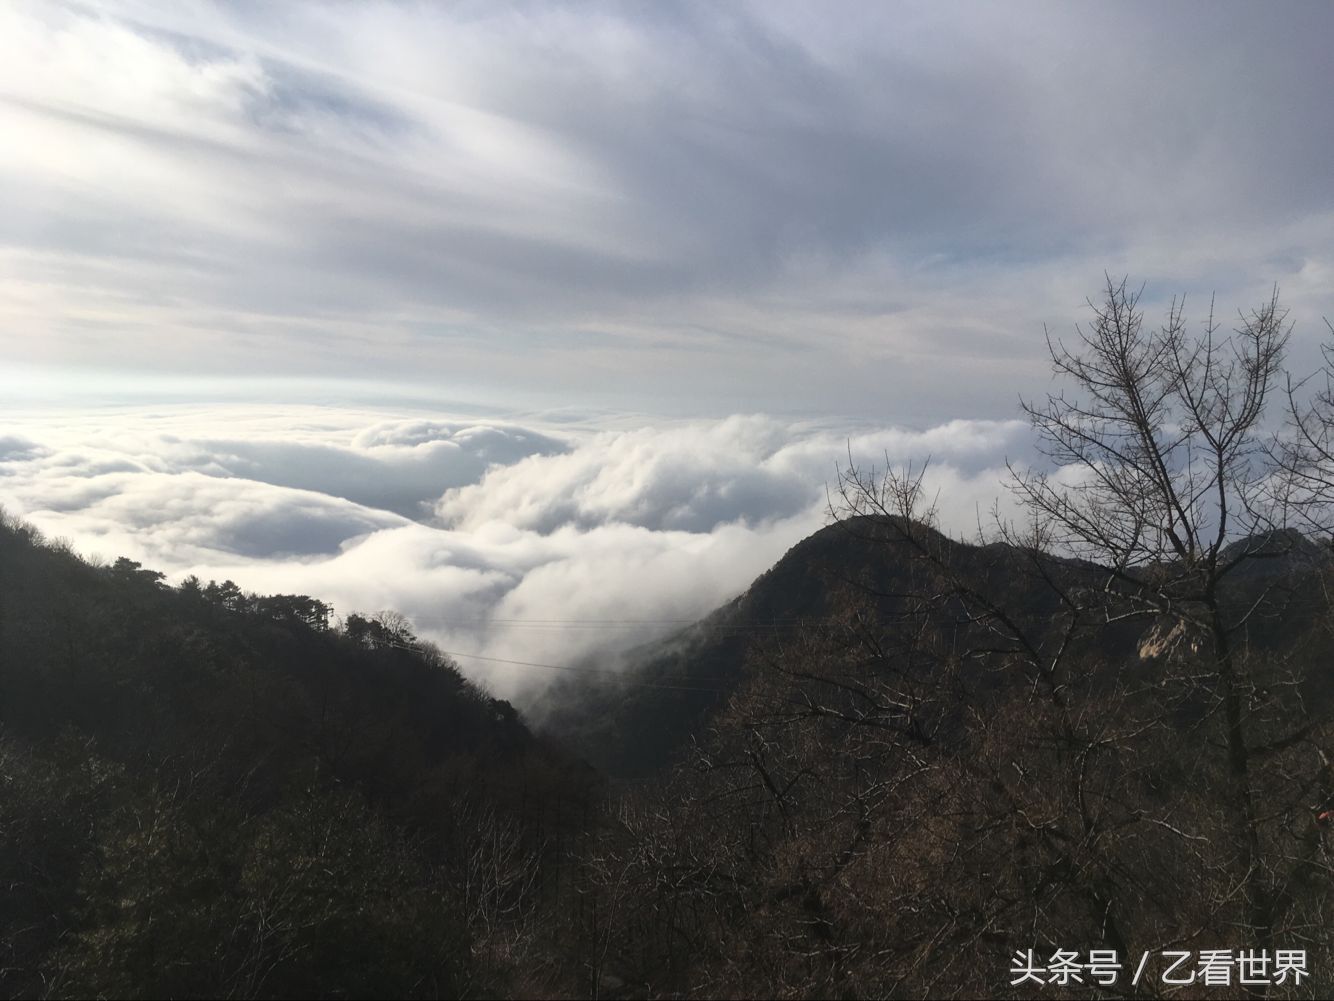 春游泰山,我们看到的云海是泰山四大奇观之云